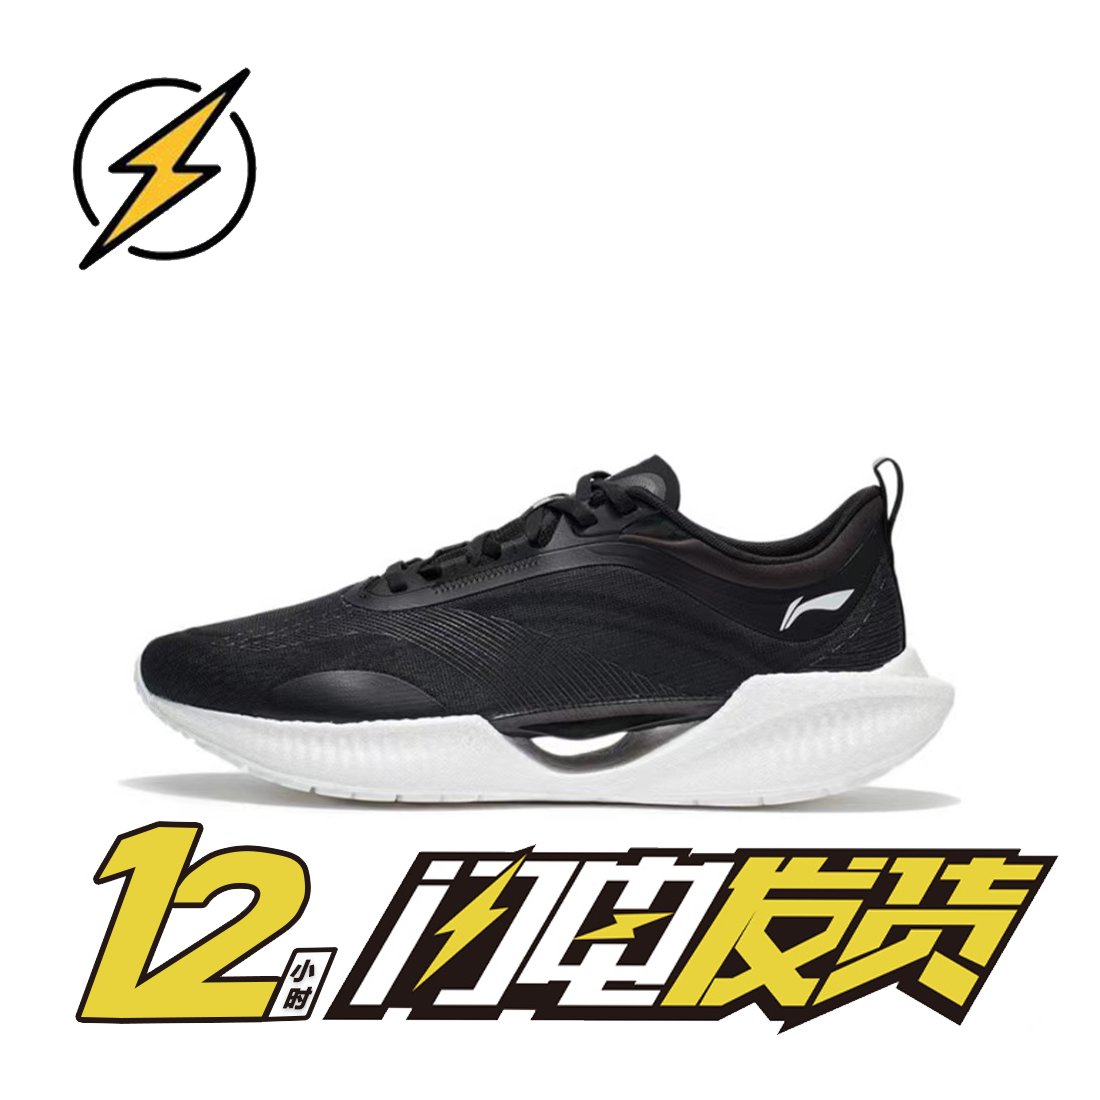 李宁超轻19黑白 䨻科技运动鞋男子减震透气专业竞速跑鞋ARBS001-8